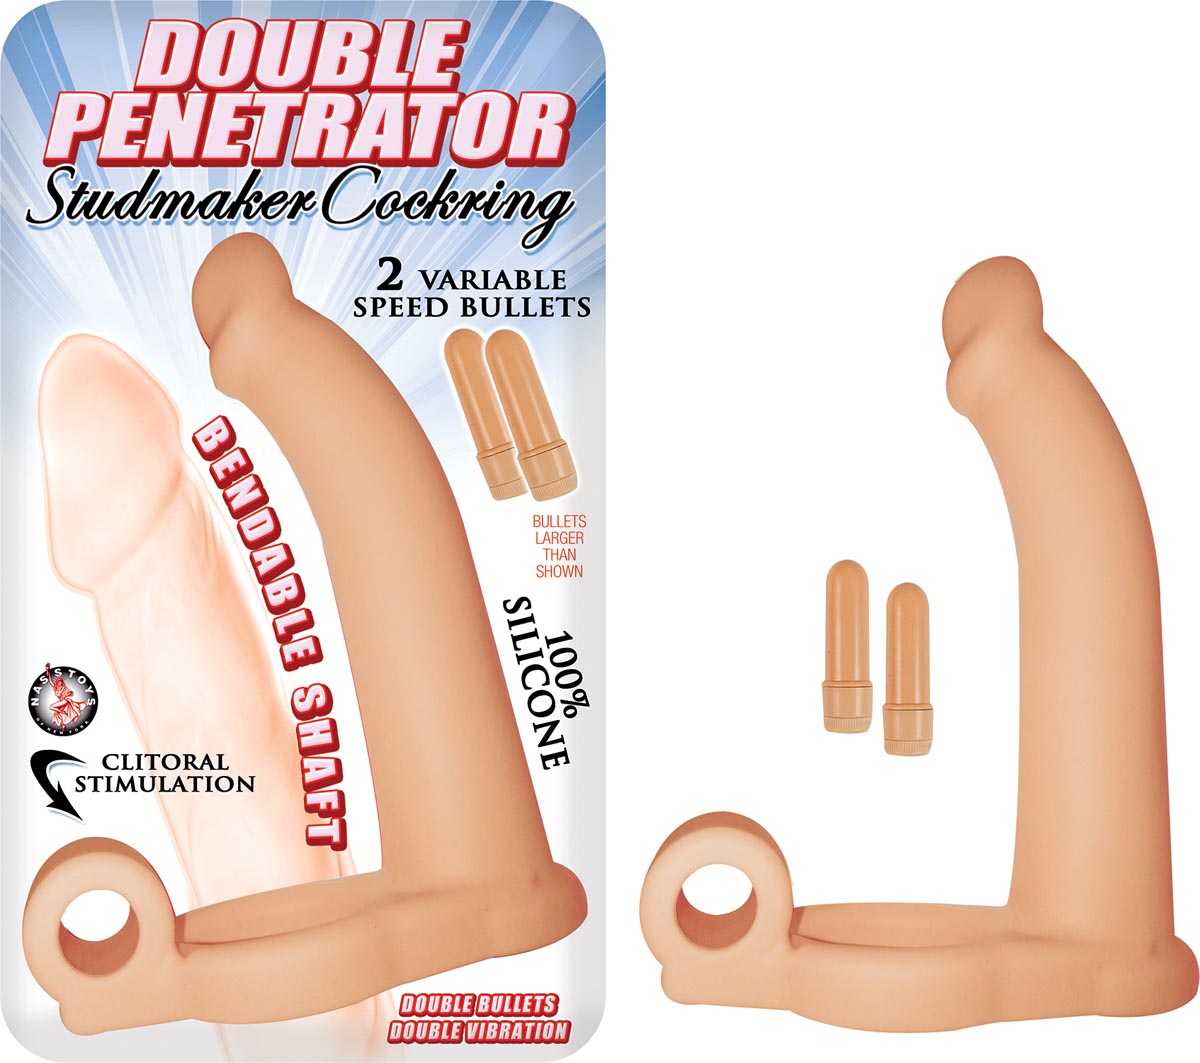 Double penetrator toy